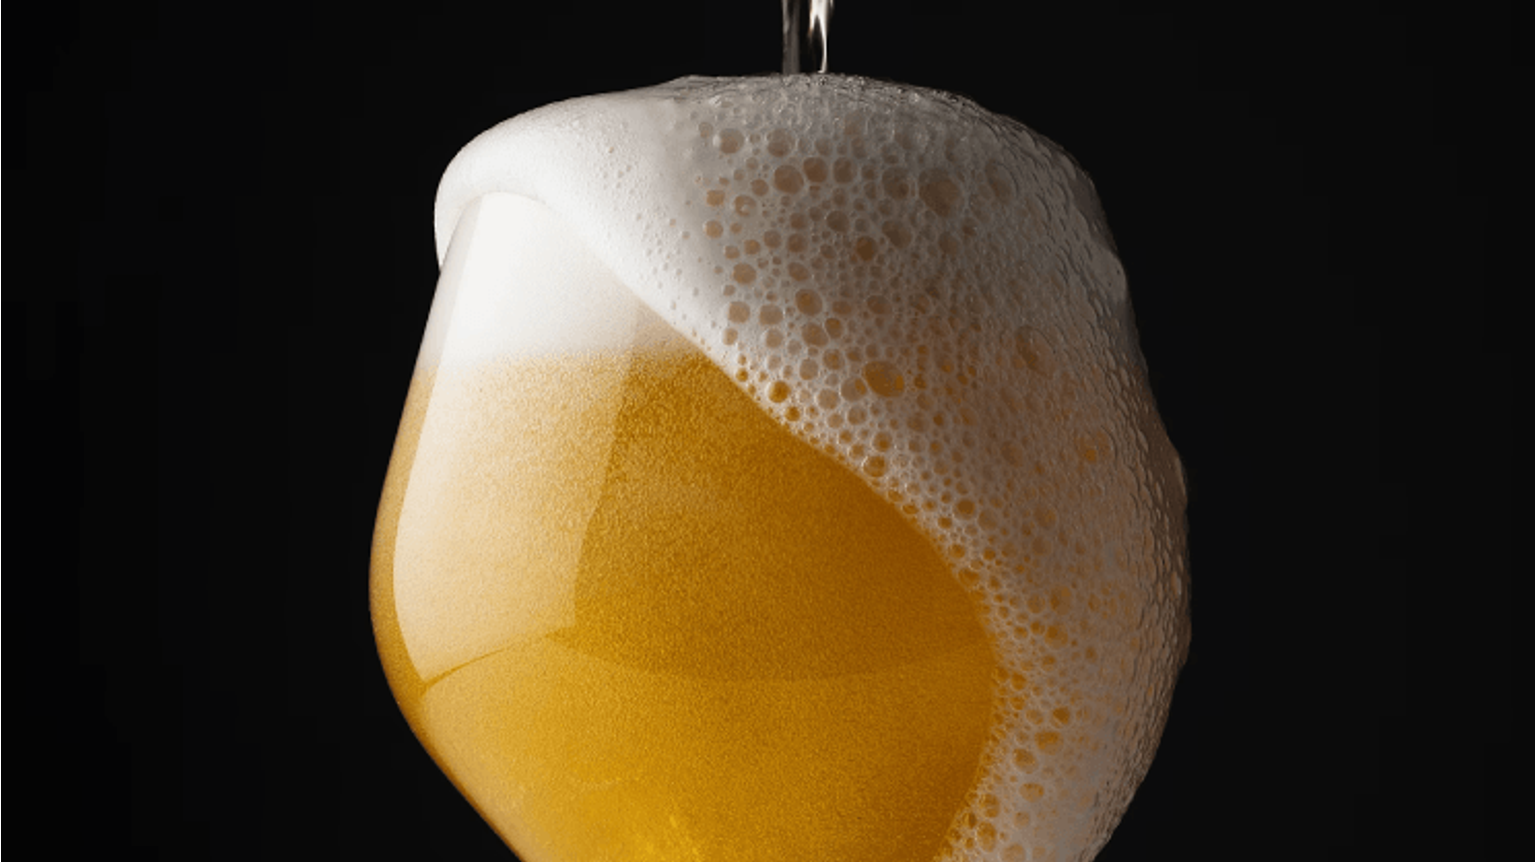 thumbnail for blog article named: Alkoholfri öl, den nya konsumenttrenden i bryggerivärlden